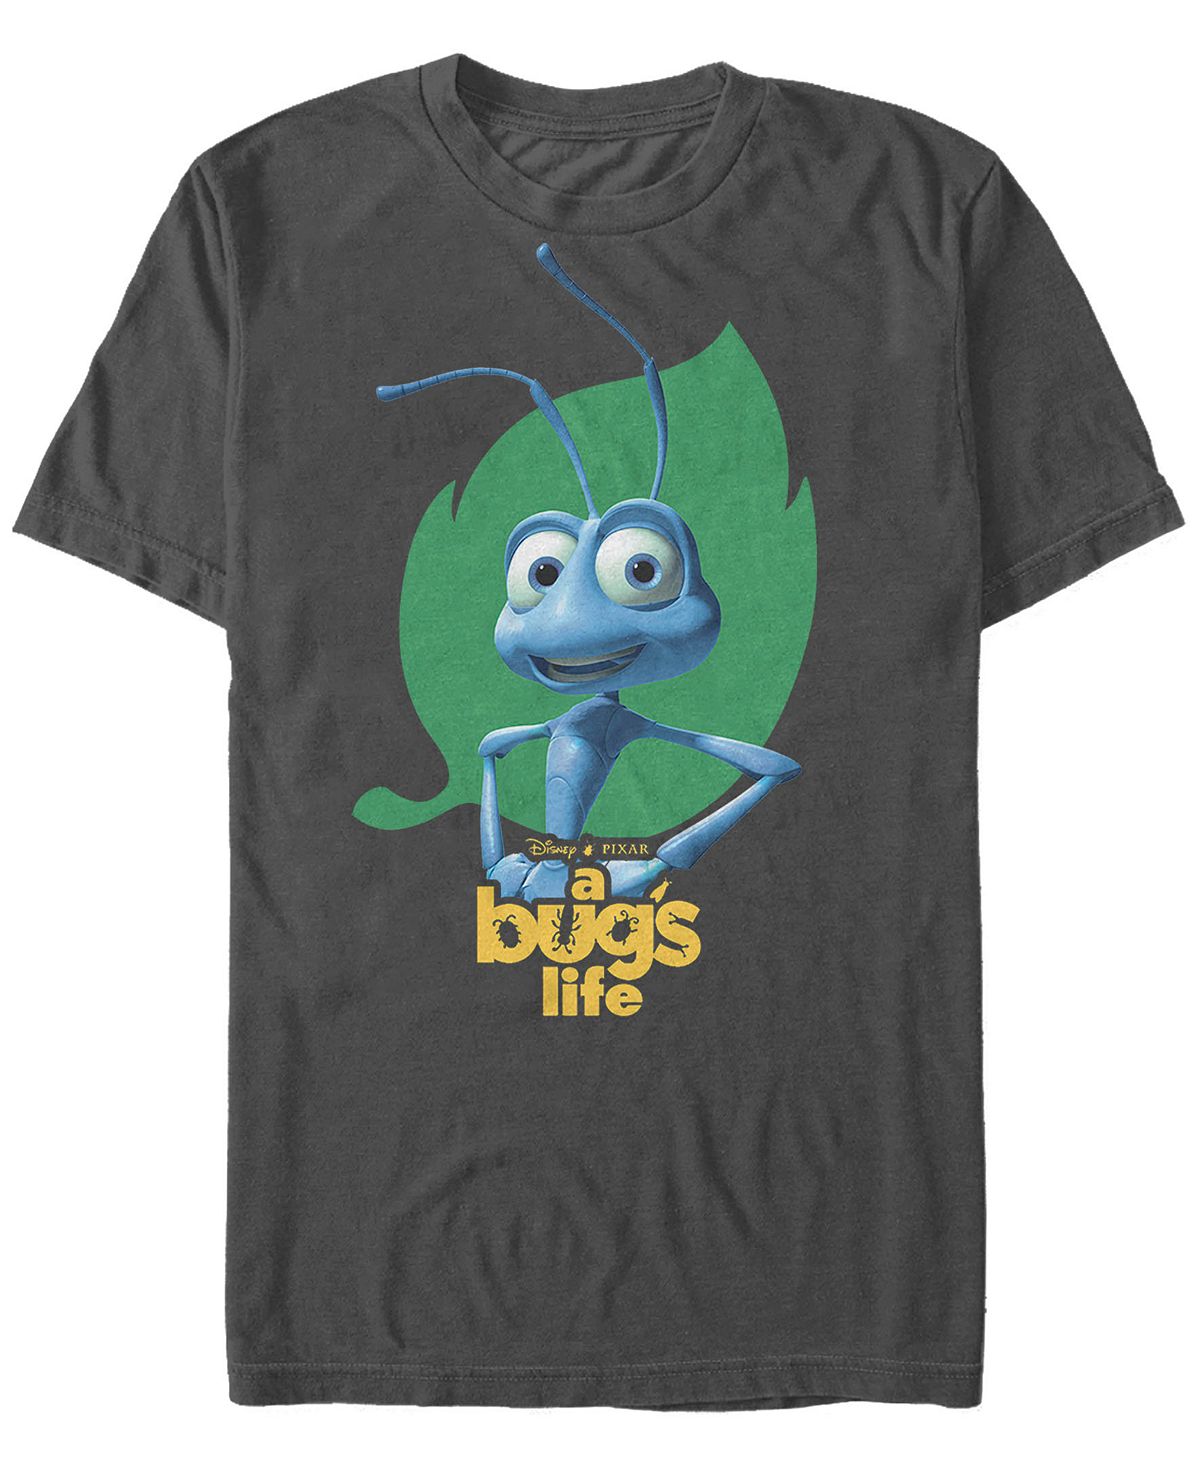 Мужская футболка с коротким рукавом с логотипом disney pixar bugs life flik hips Fifth Sun, мульти наручные часы flik flak time invader